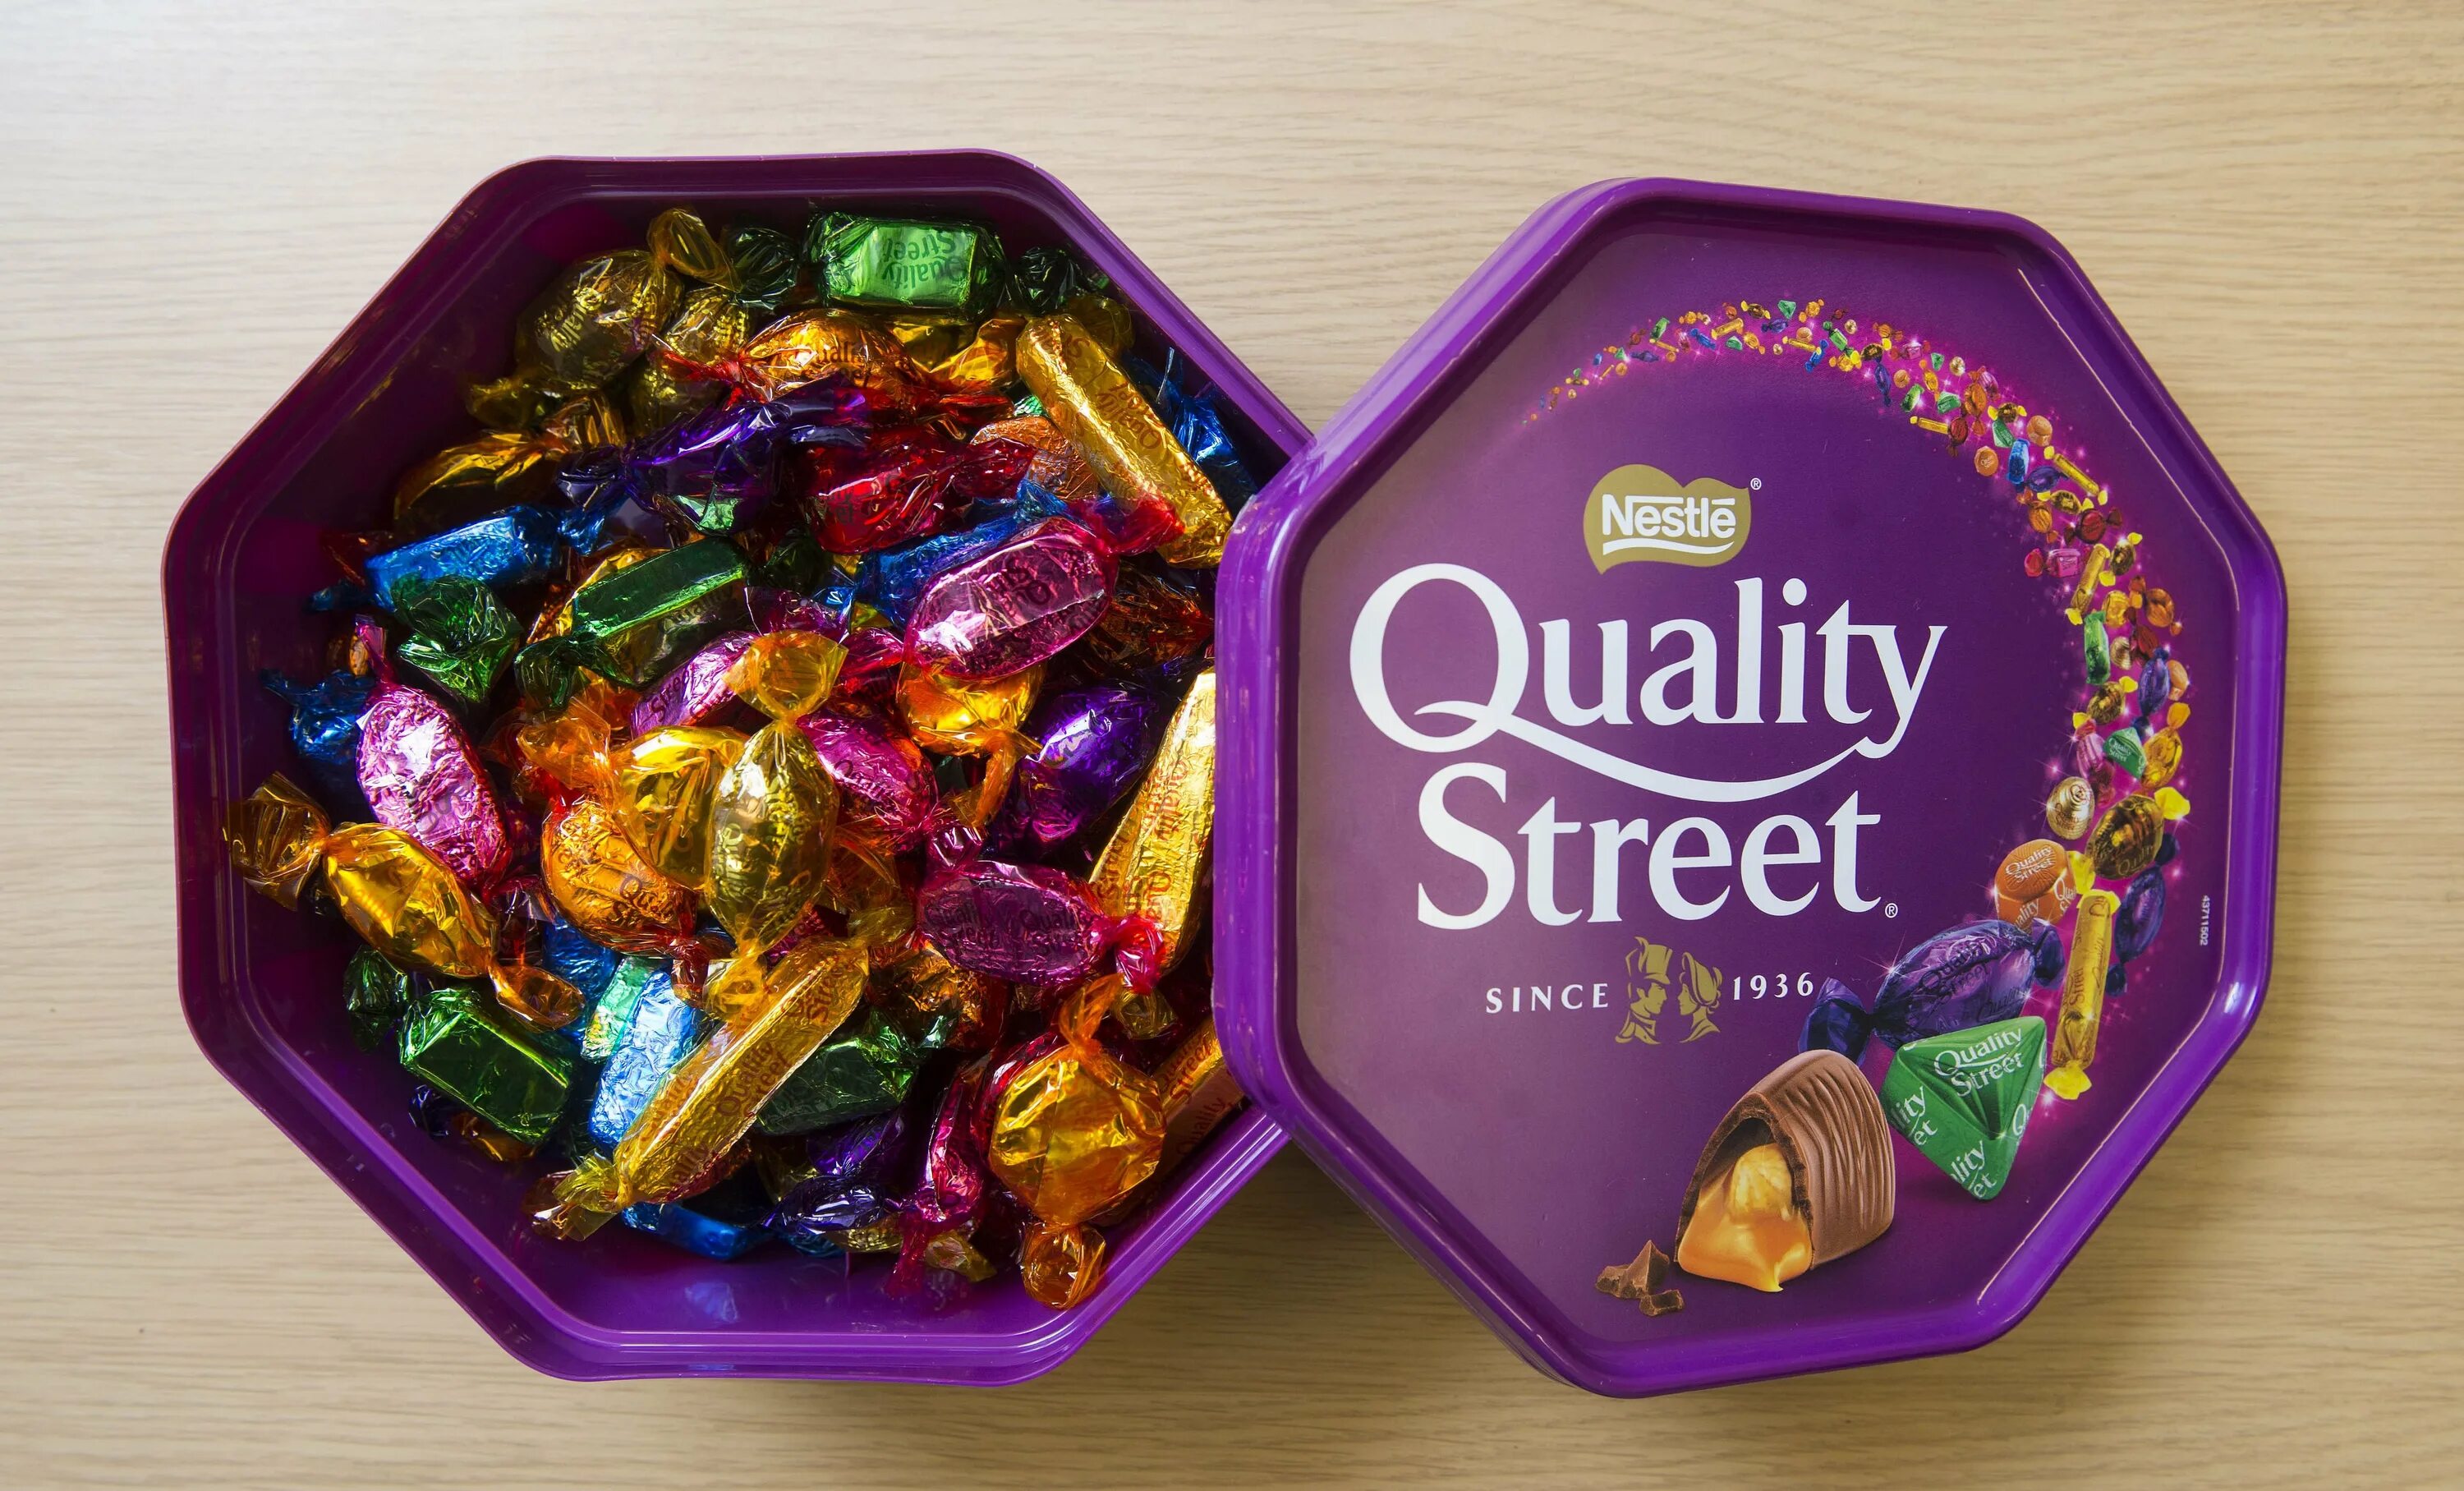 Иди конфеты купить. Кволити стрит конфеты. Макинтош конфеты quality Street. Конфеты Nestle quality Street. Конфеты в фиолетовой коробке.